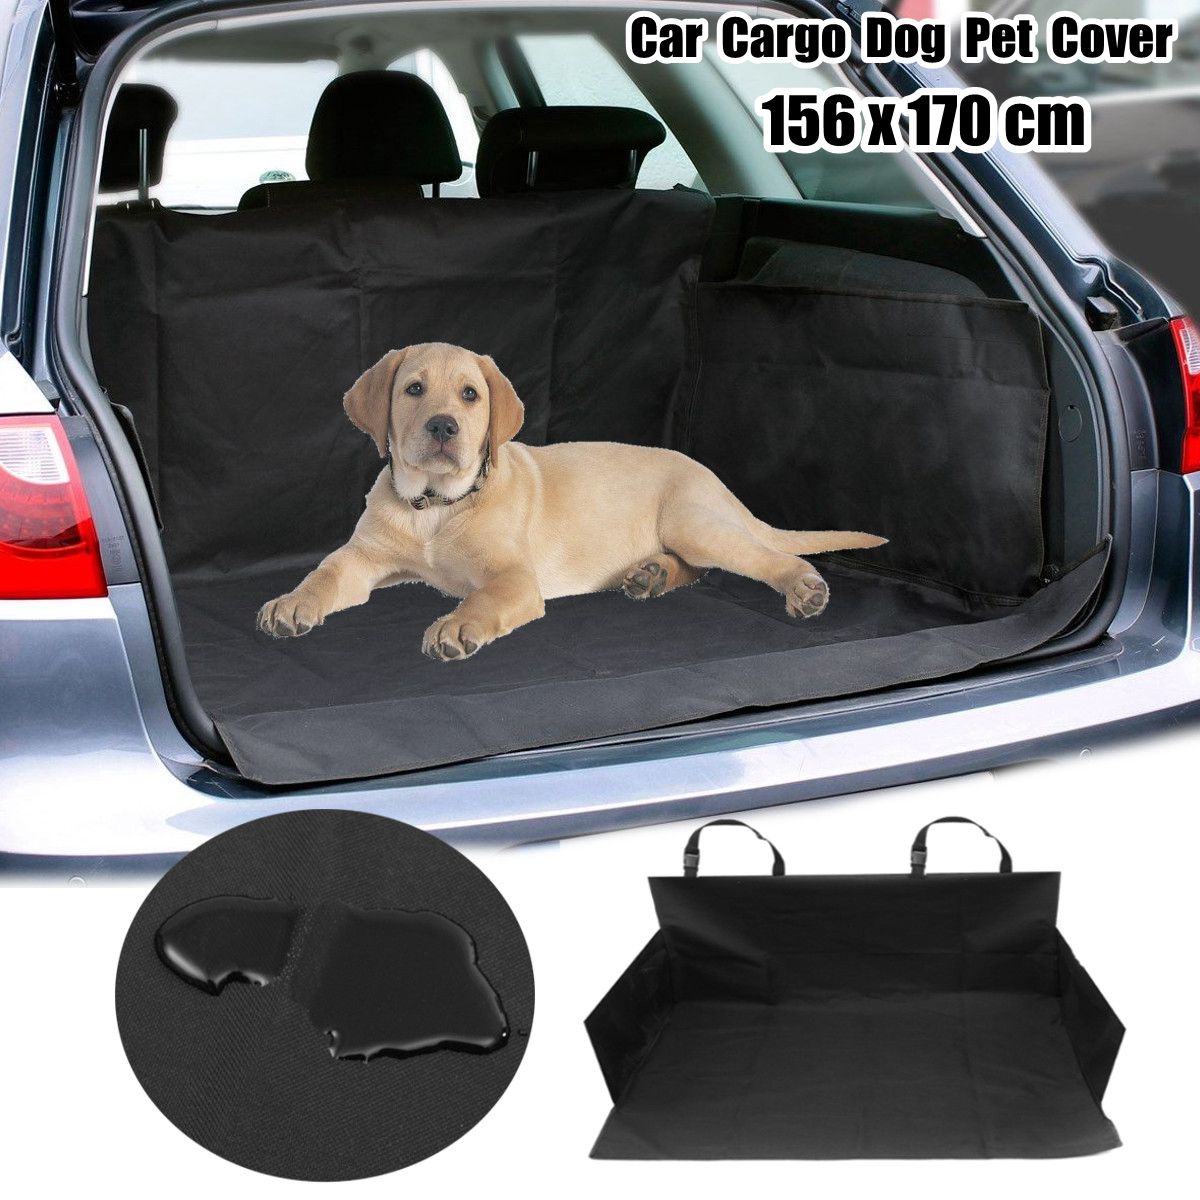 Waterproof Pet Dog Car Boot Seat Cover